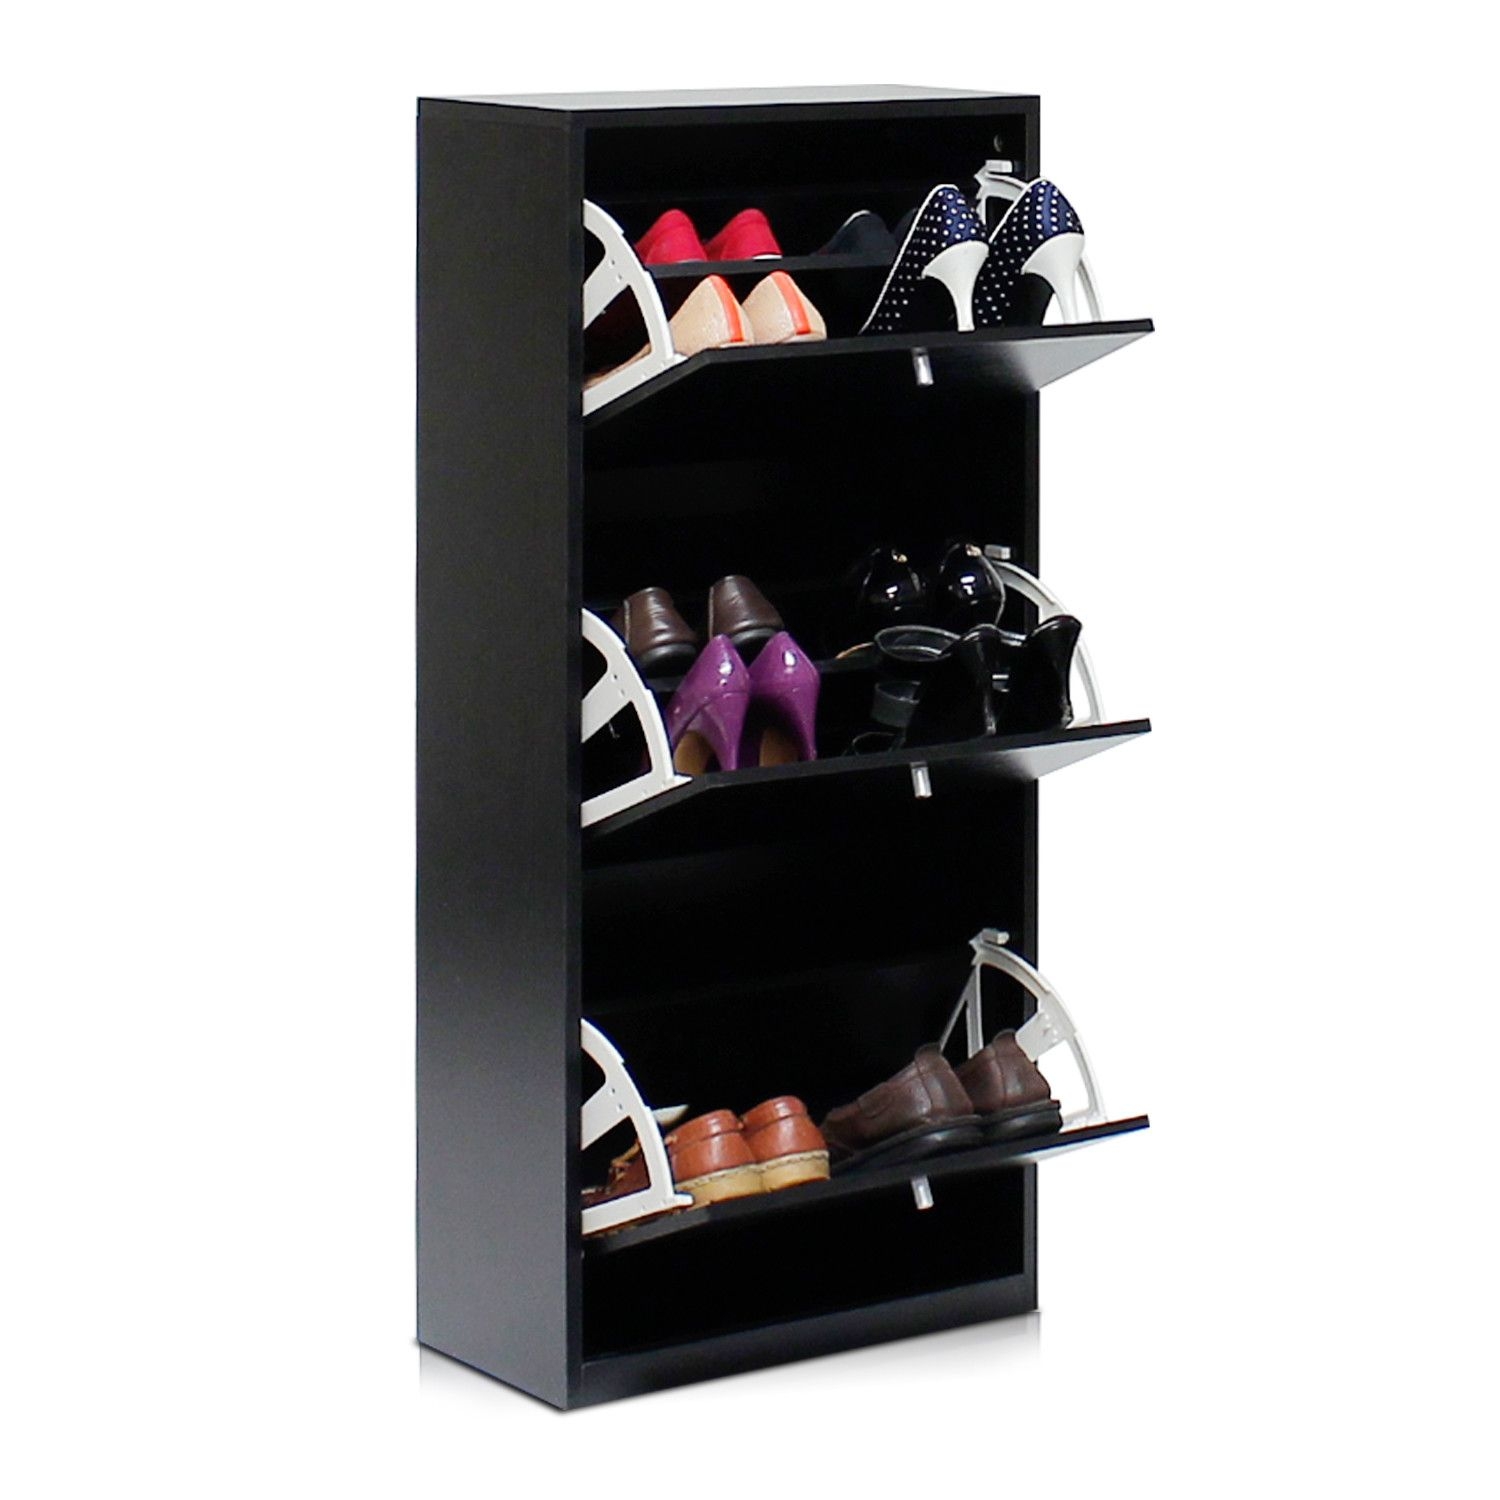 B&W 3-Door Shoe Storage Cabinet